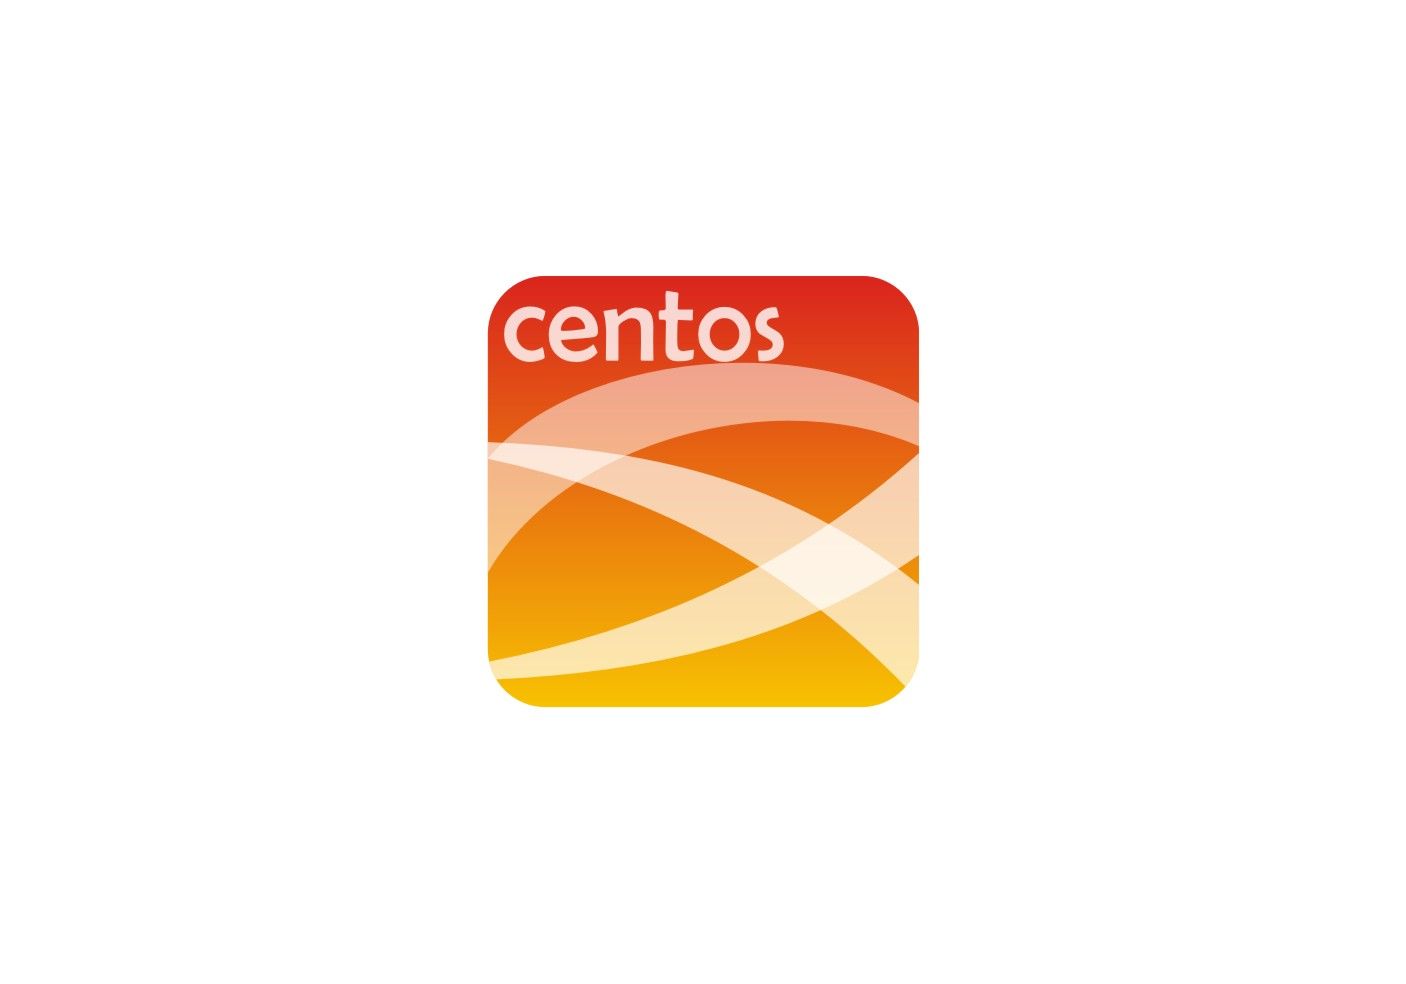 Логотип для компании Centos-admin.ru - дизайнер Mlada88